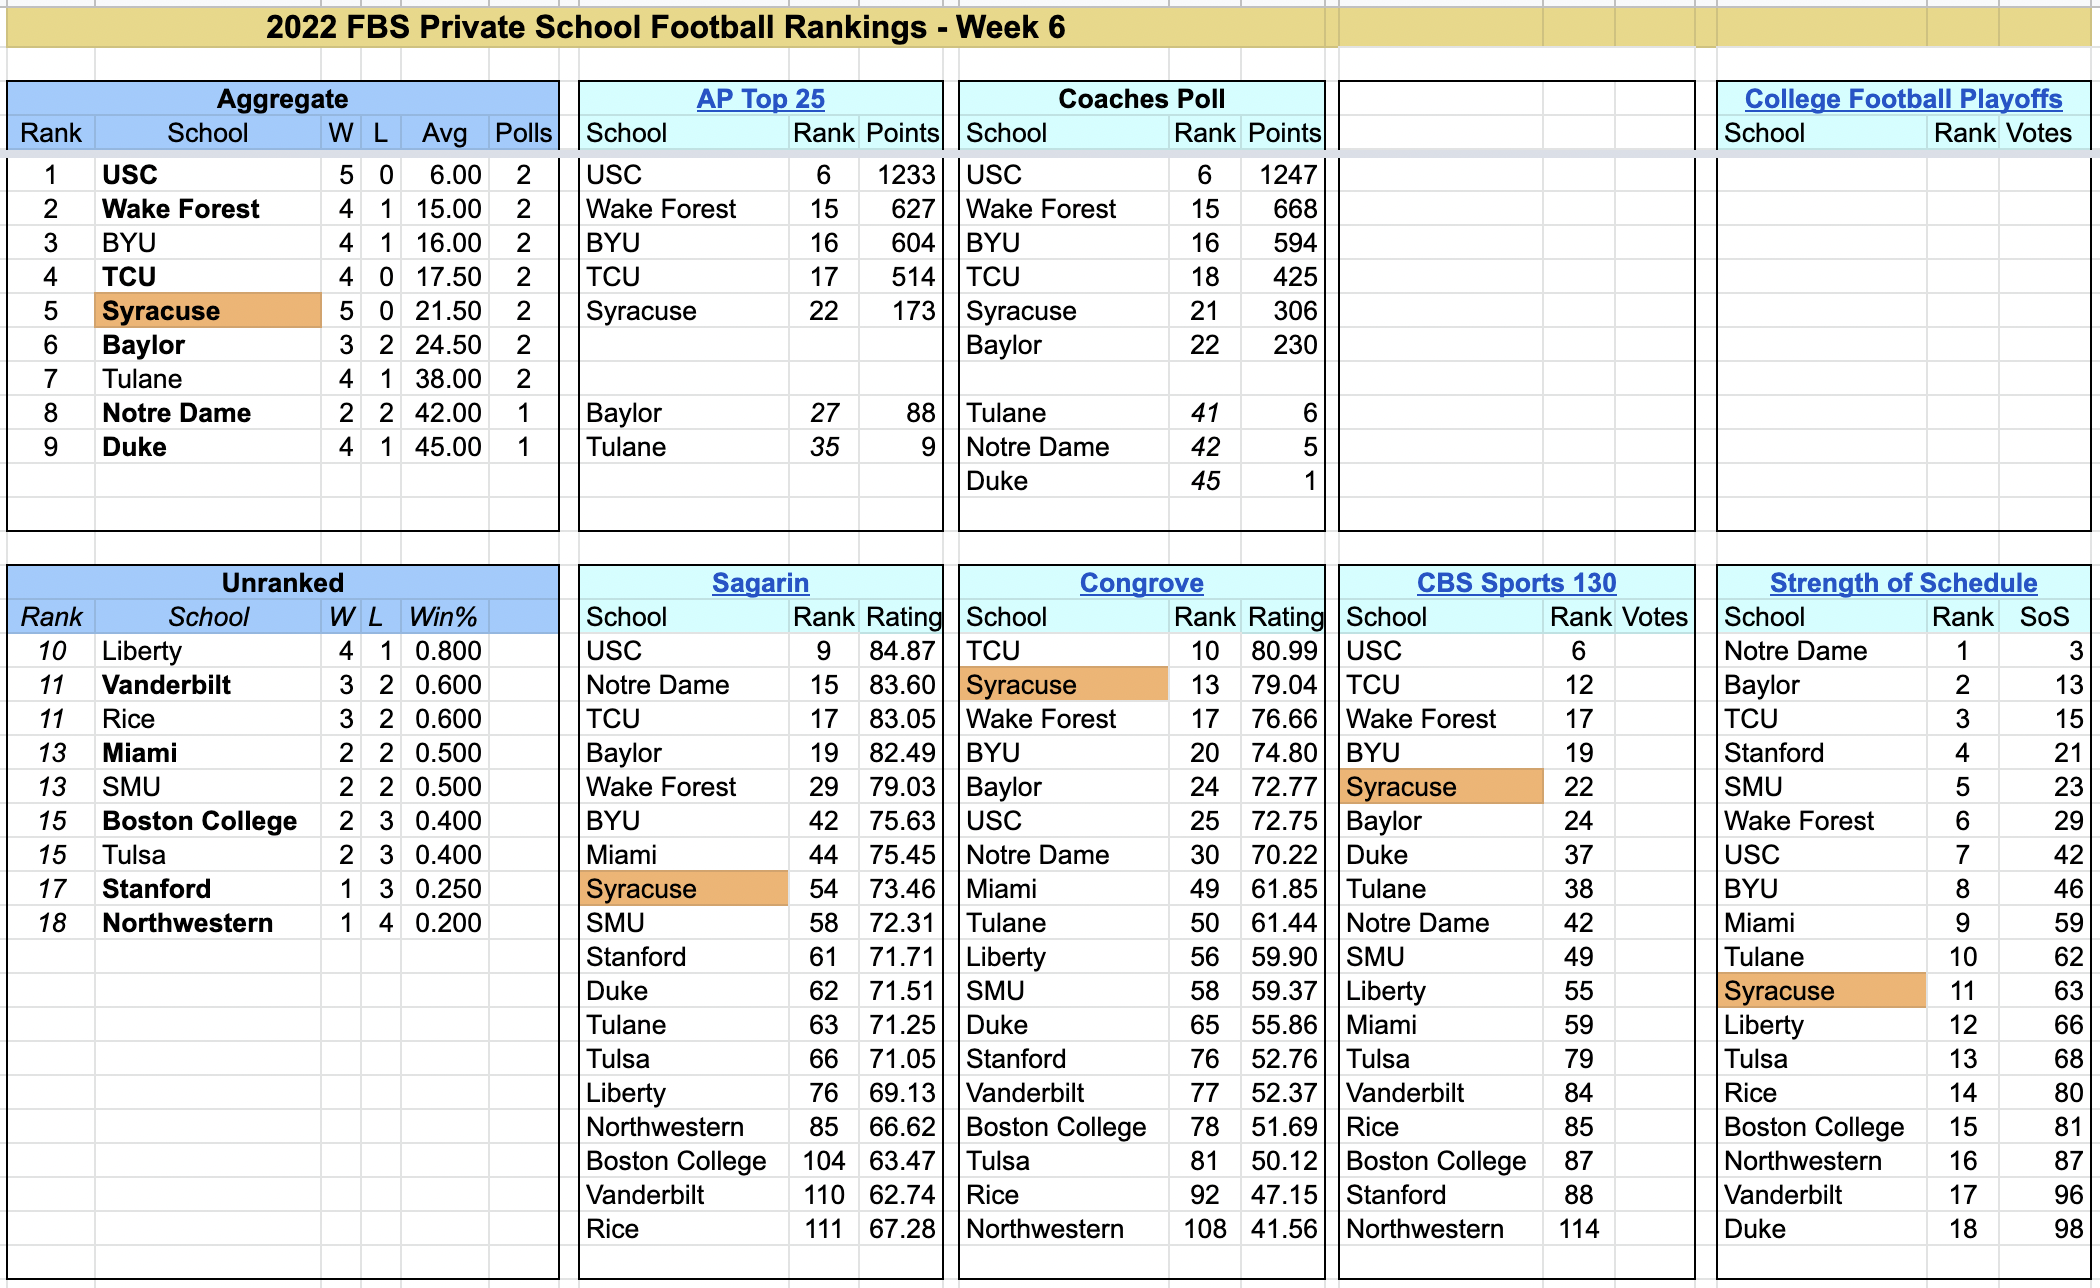 2022-FBS-PrivateSchoolFootballRankings-Week6.png